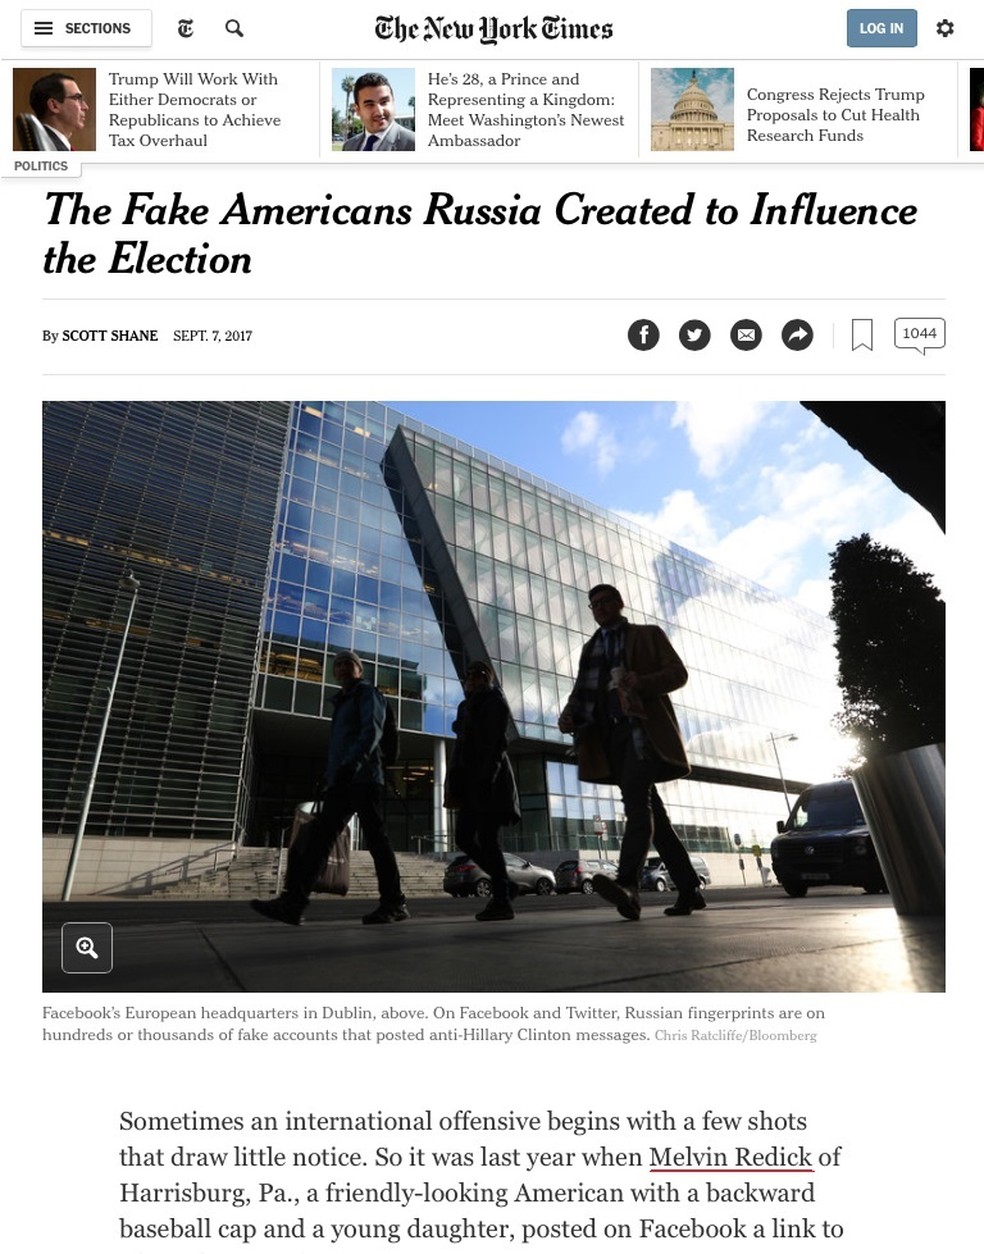 Reprodução de reportagem do 'NY Times' mostra o nome Melvin Redick, um dos perfis falsos usados para influenciar a eleição dos EUA (Foto: Reprodução/NY Times)